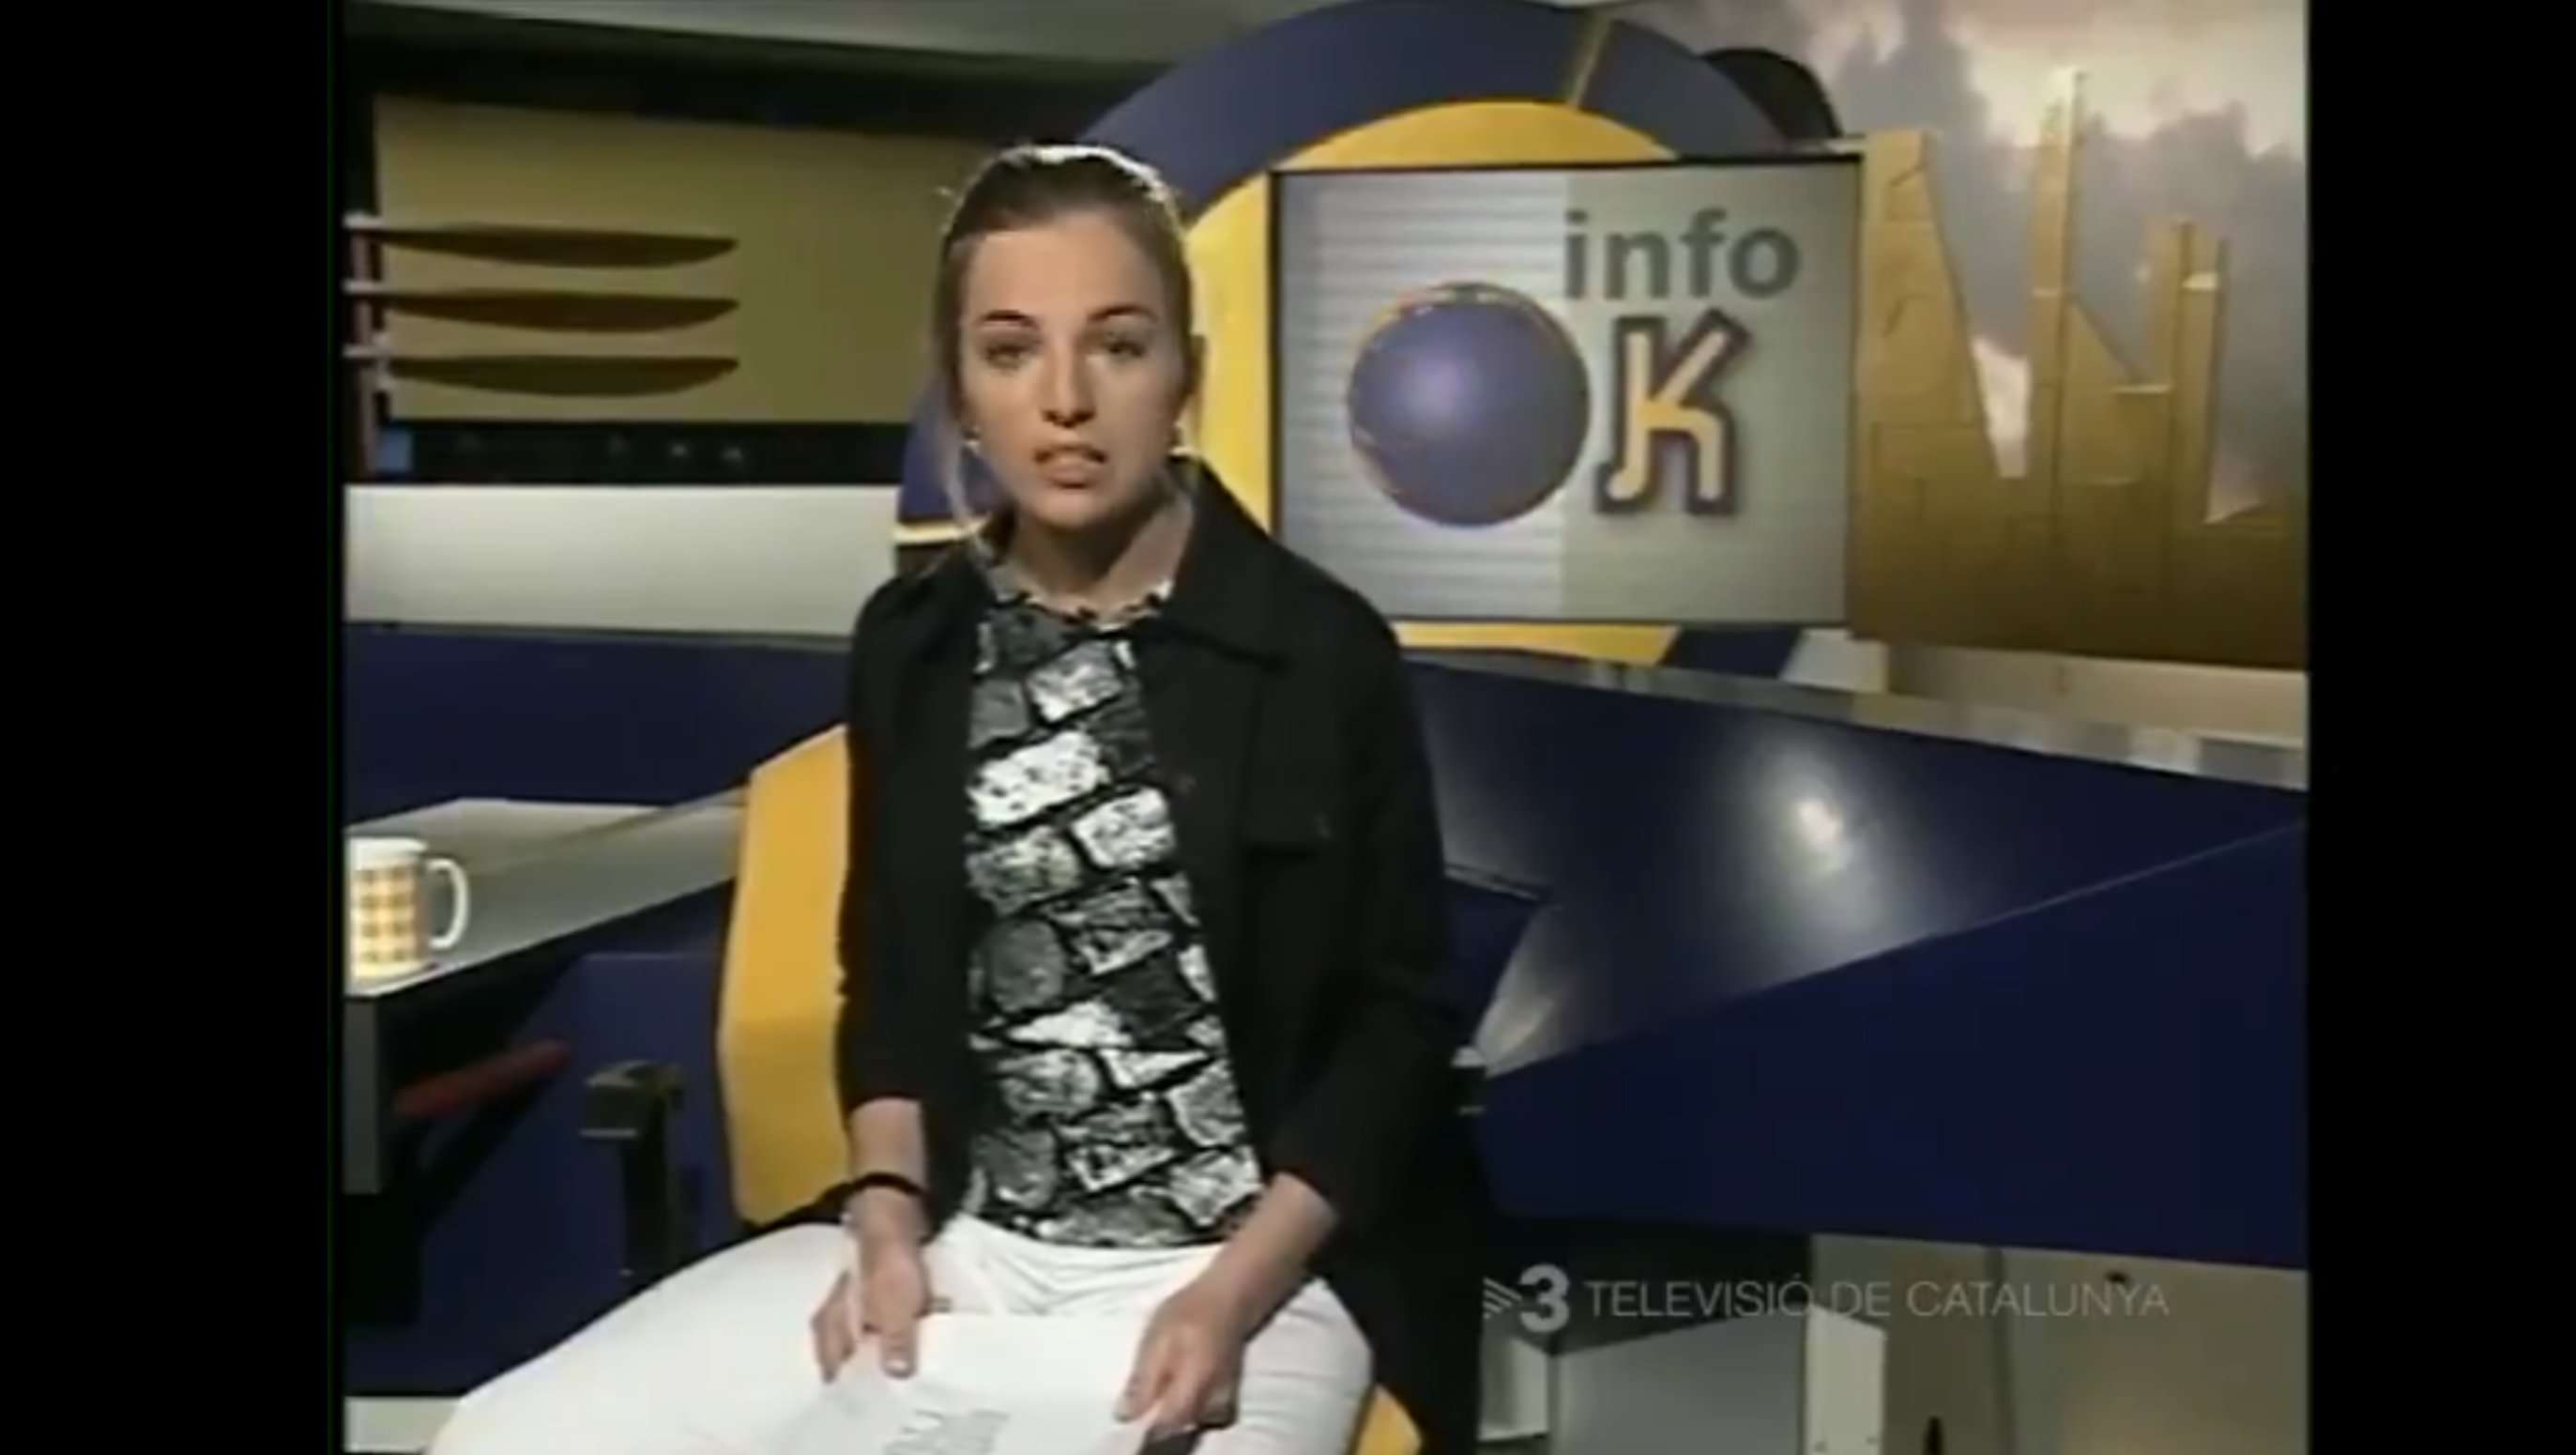 Qui era la joveníssima presentadora de TV3 que va engegar l'InfoK fa 18 anys?